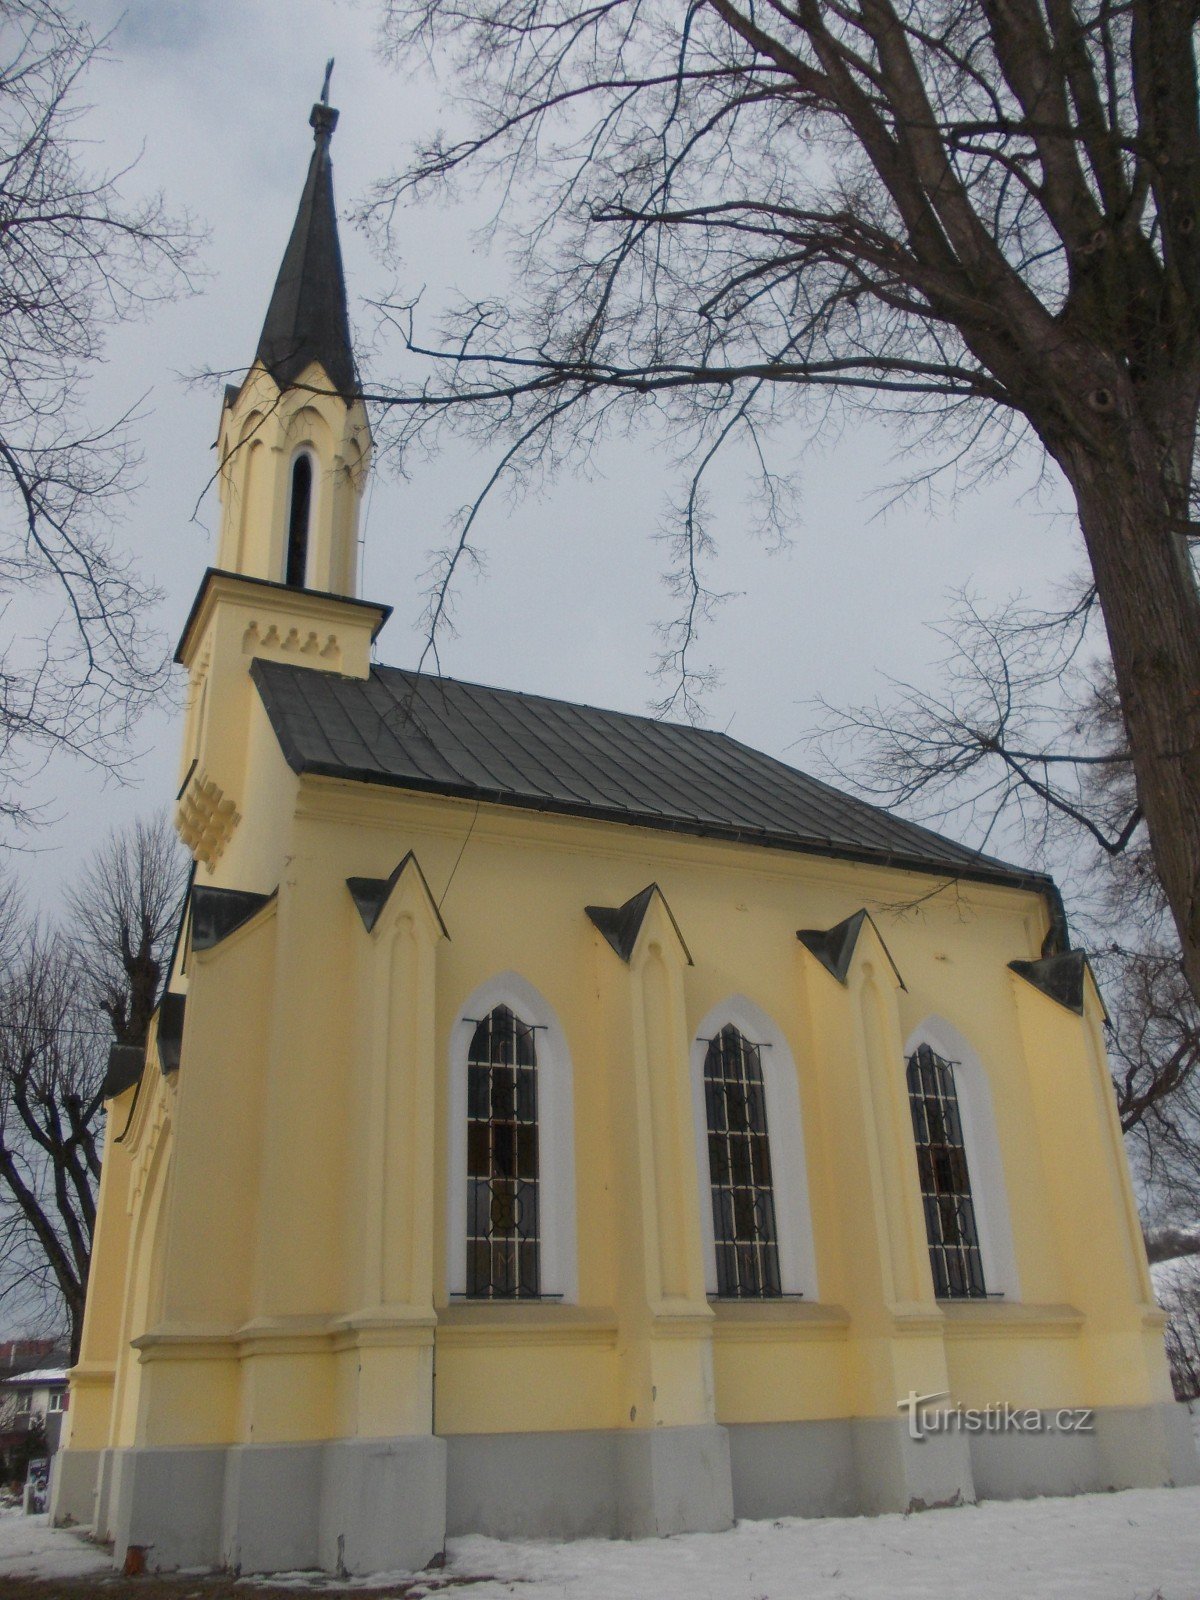 kapell av St. Cyril och Methodius